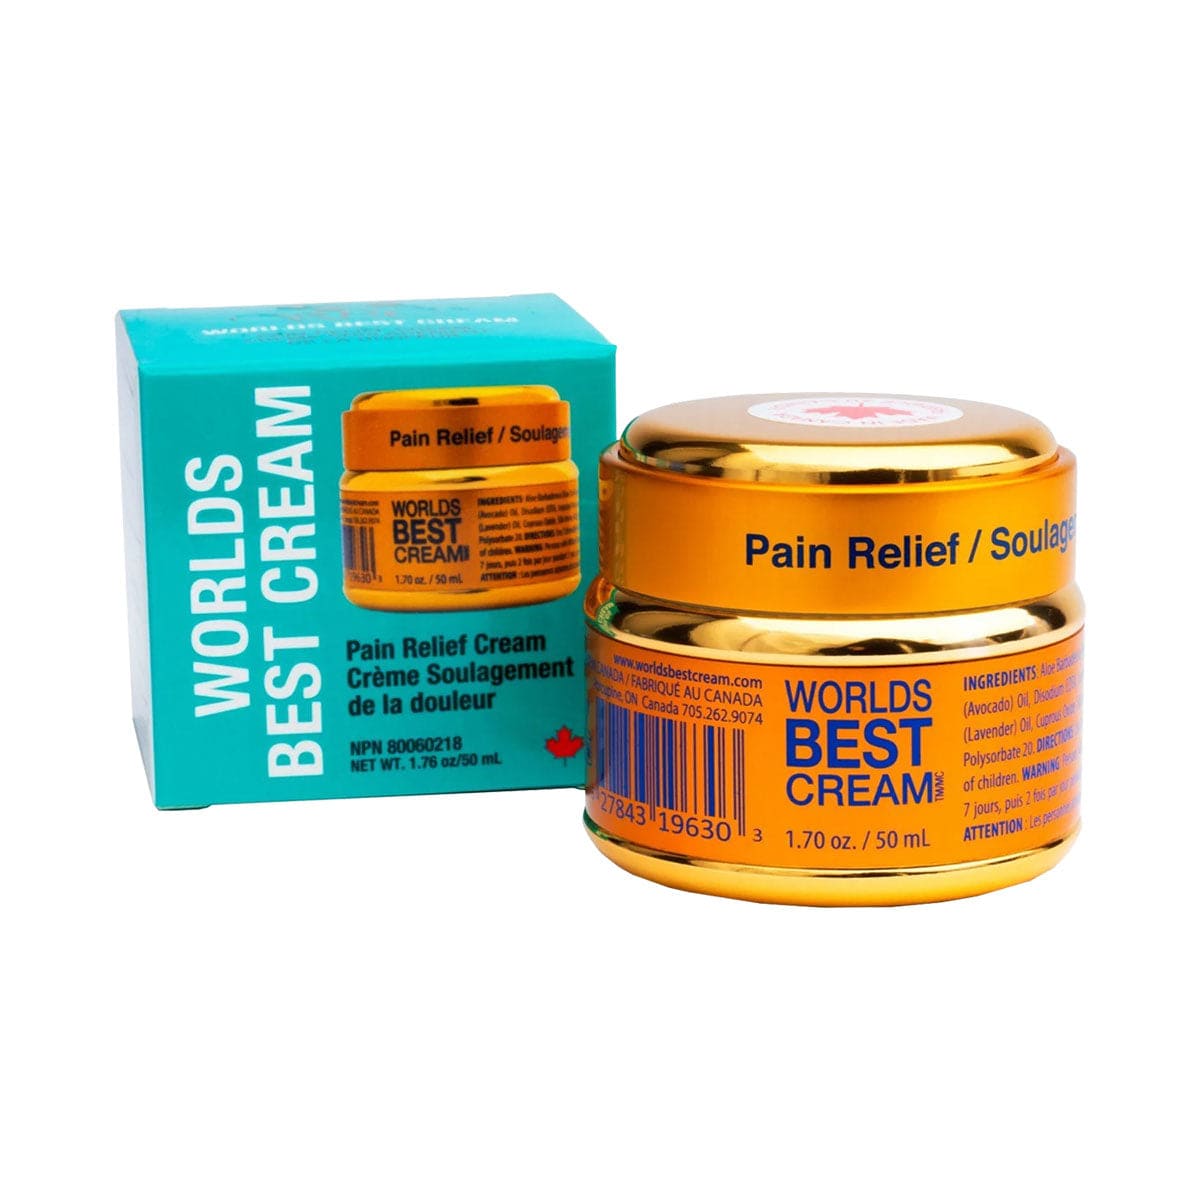 Worlds Best Cream - Arthritis Pain Relief Cream (50 ml Jar)